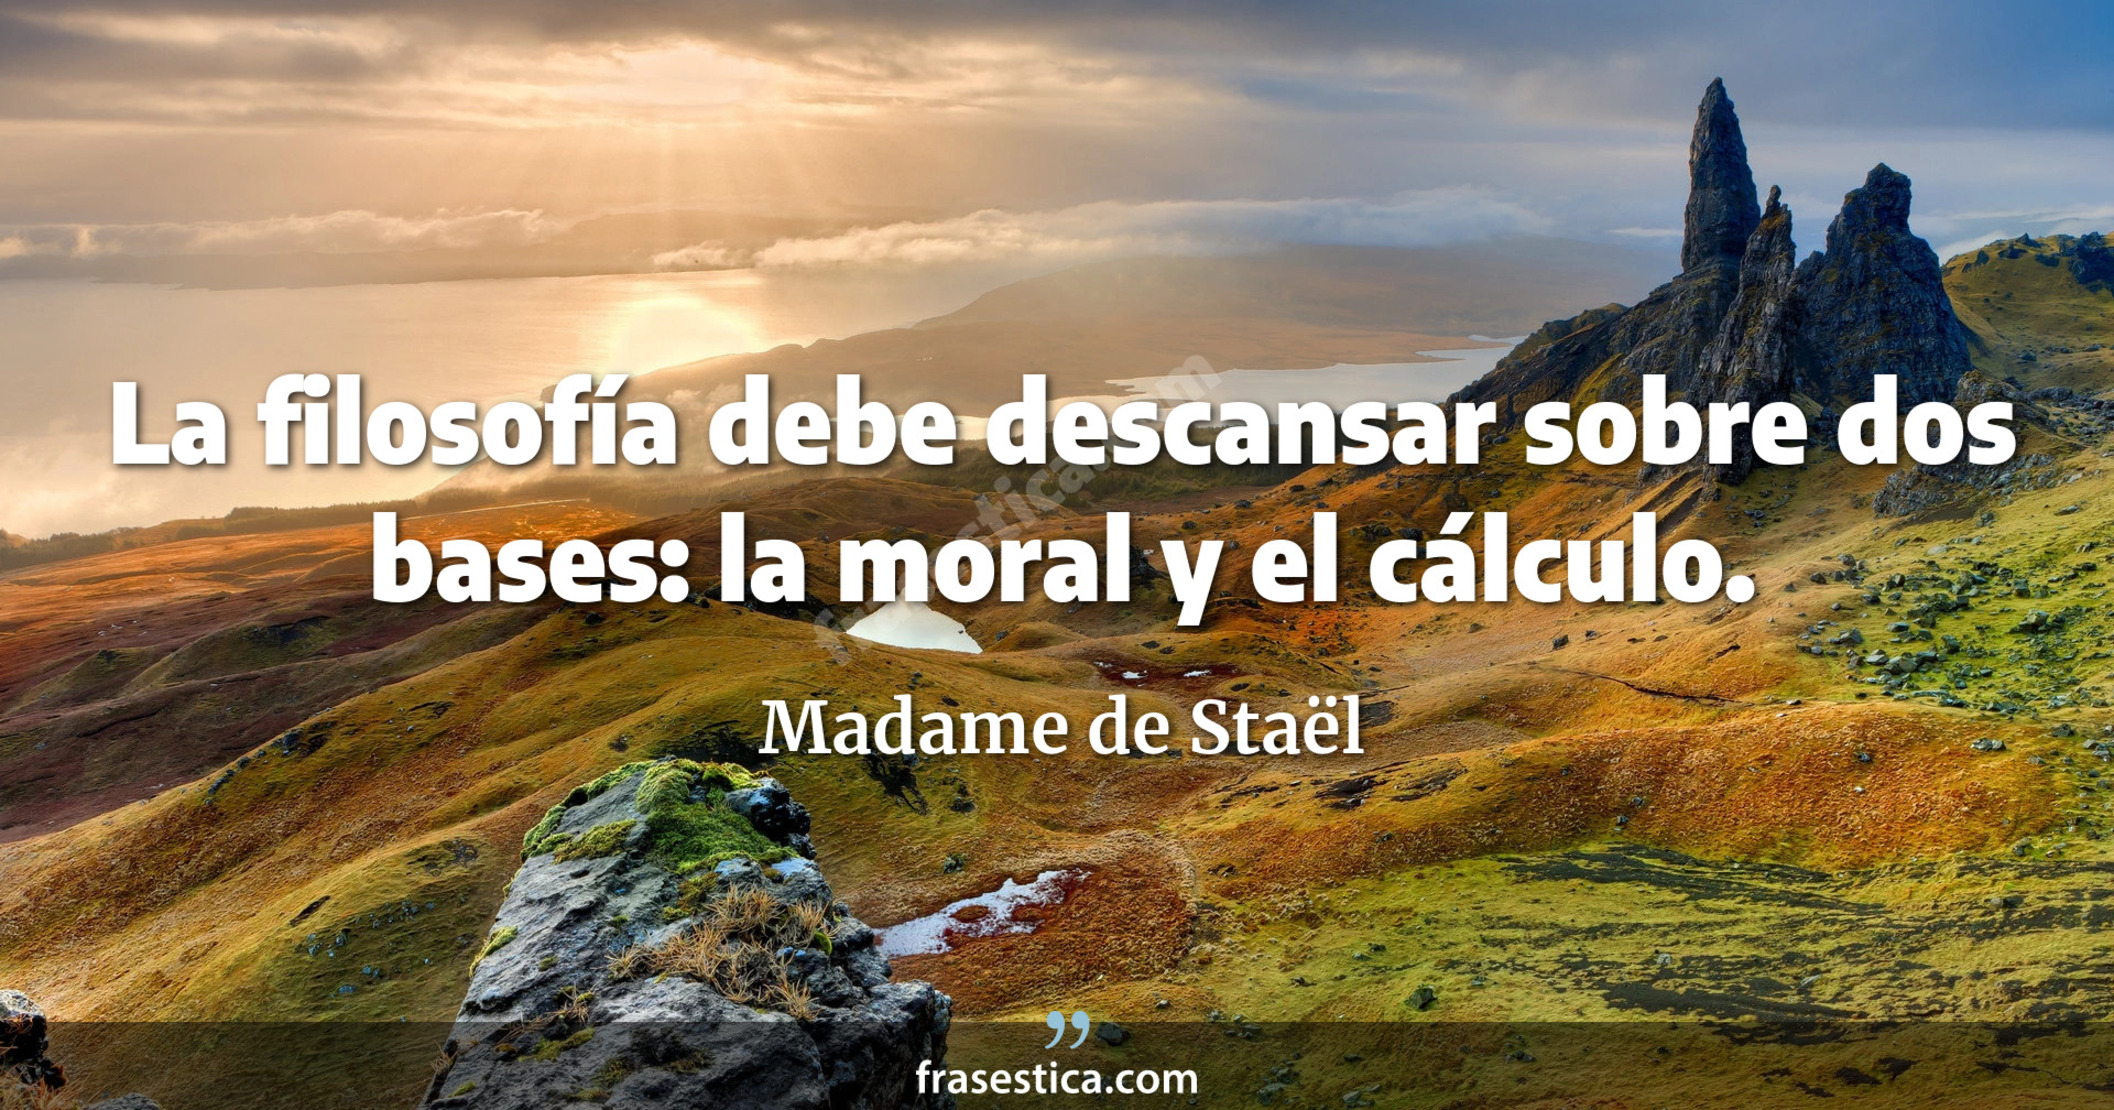 La filosofía debe descansar sobre dos bases: la moral y el cálculo. - Madame de Staël